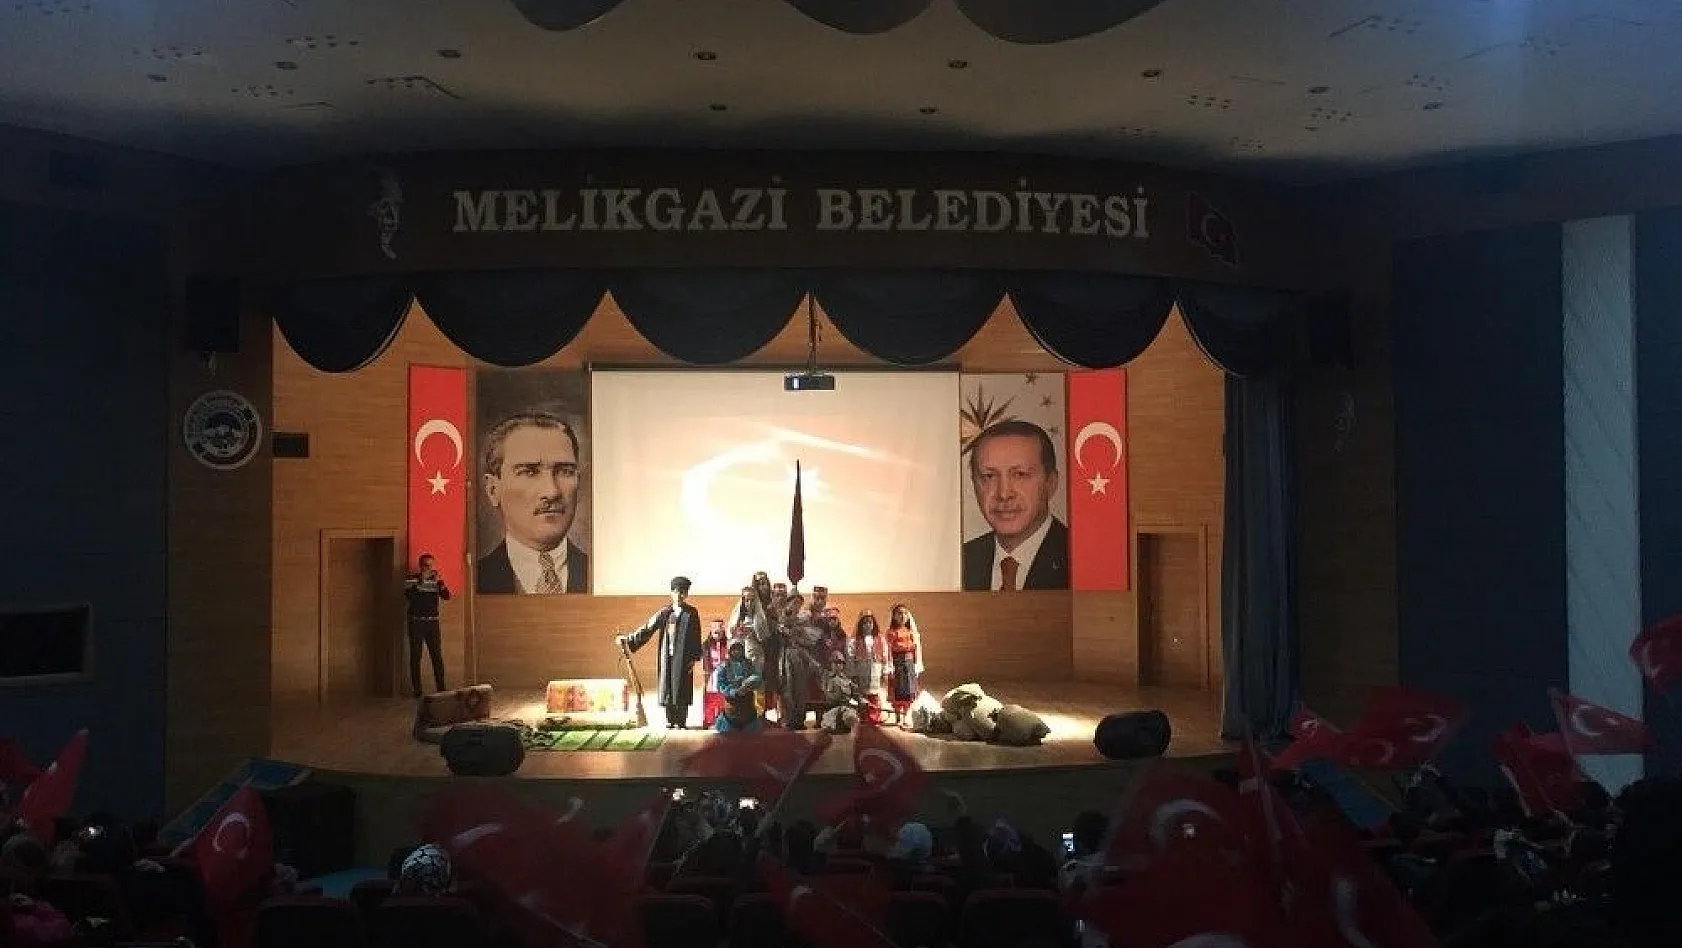 Melikgazi Belediyesi Çocuk Meclisi'nden 'İstiklal Marşı' konulu tiyatro gösterisi
